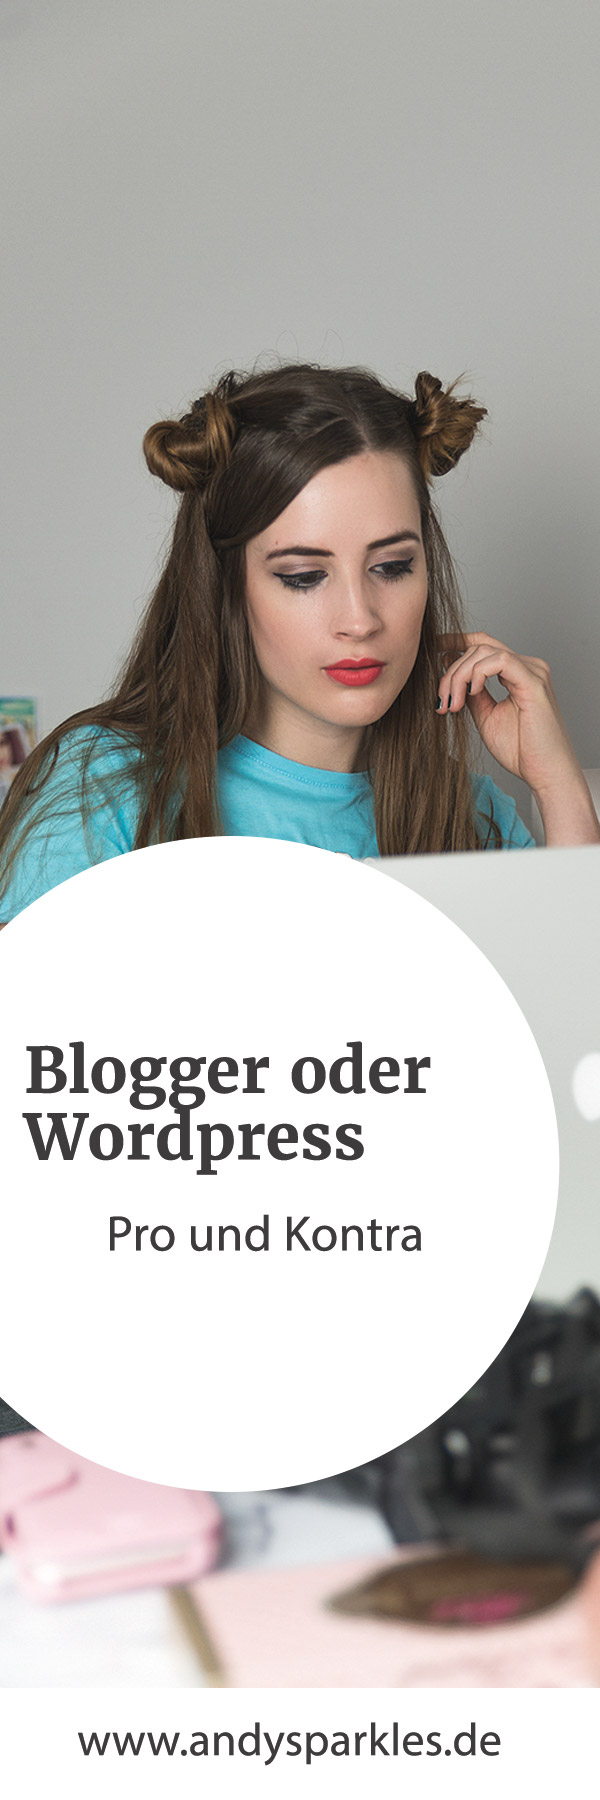 andysparkles-Blogger oder WordPress